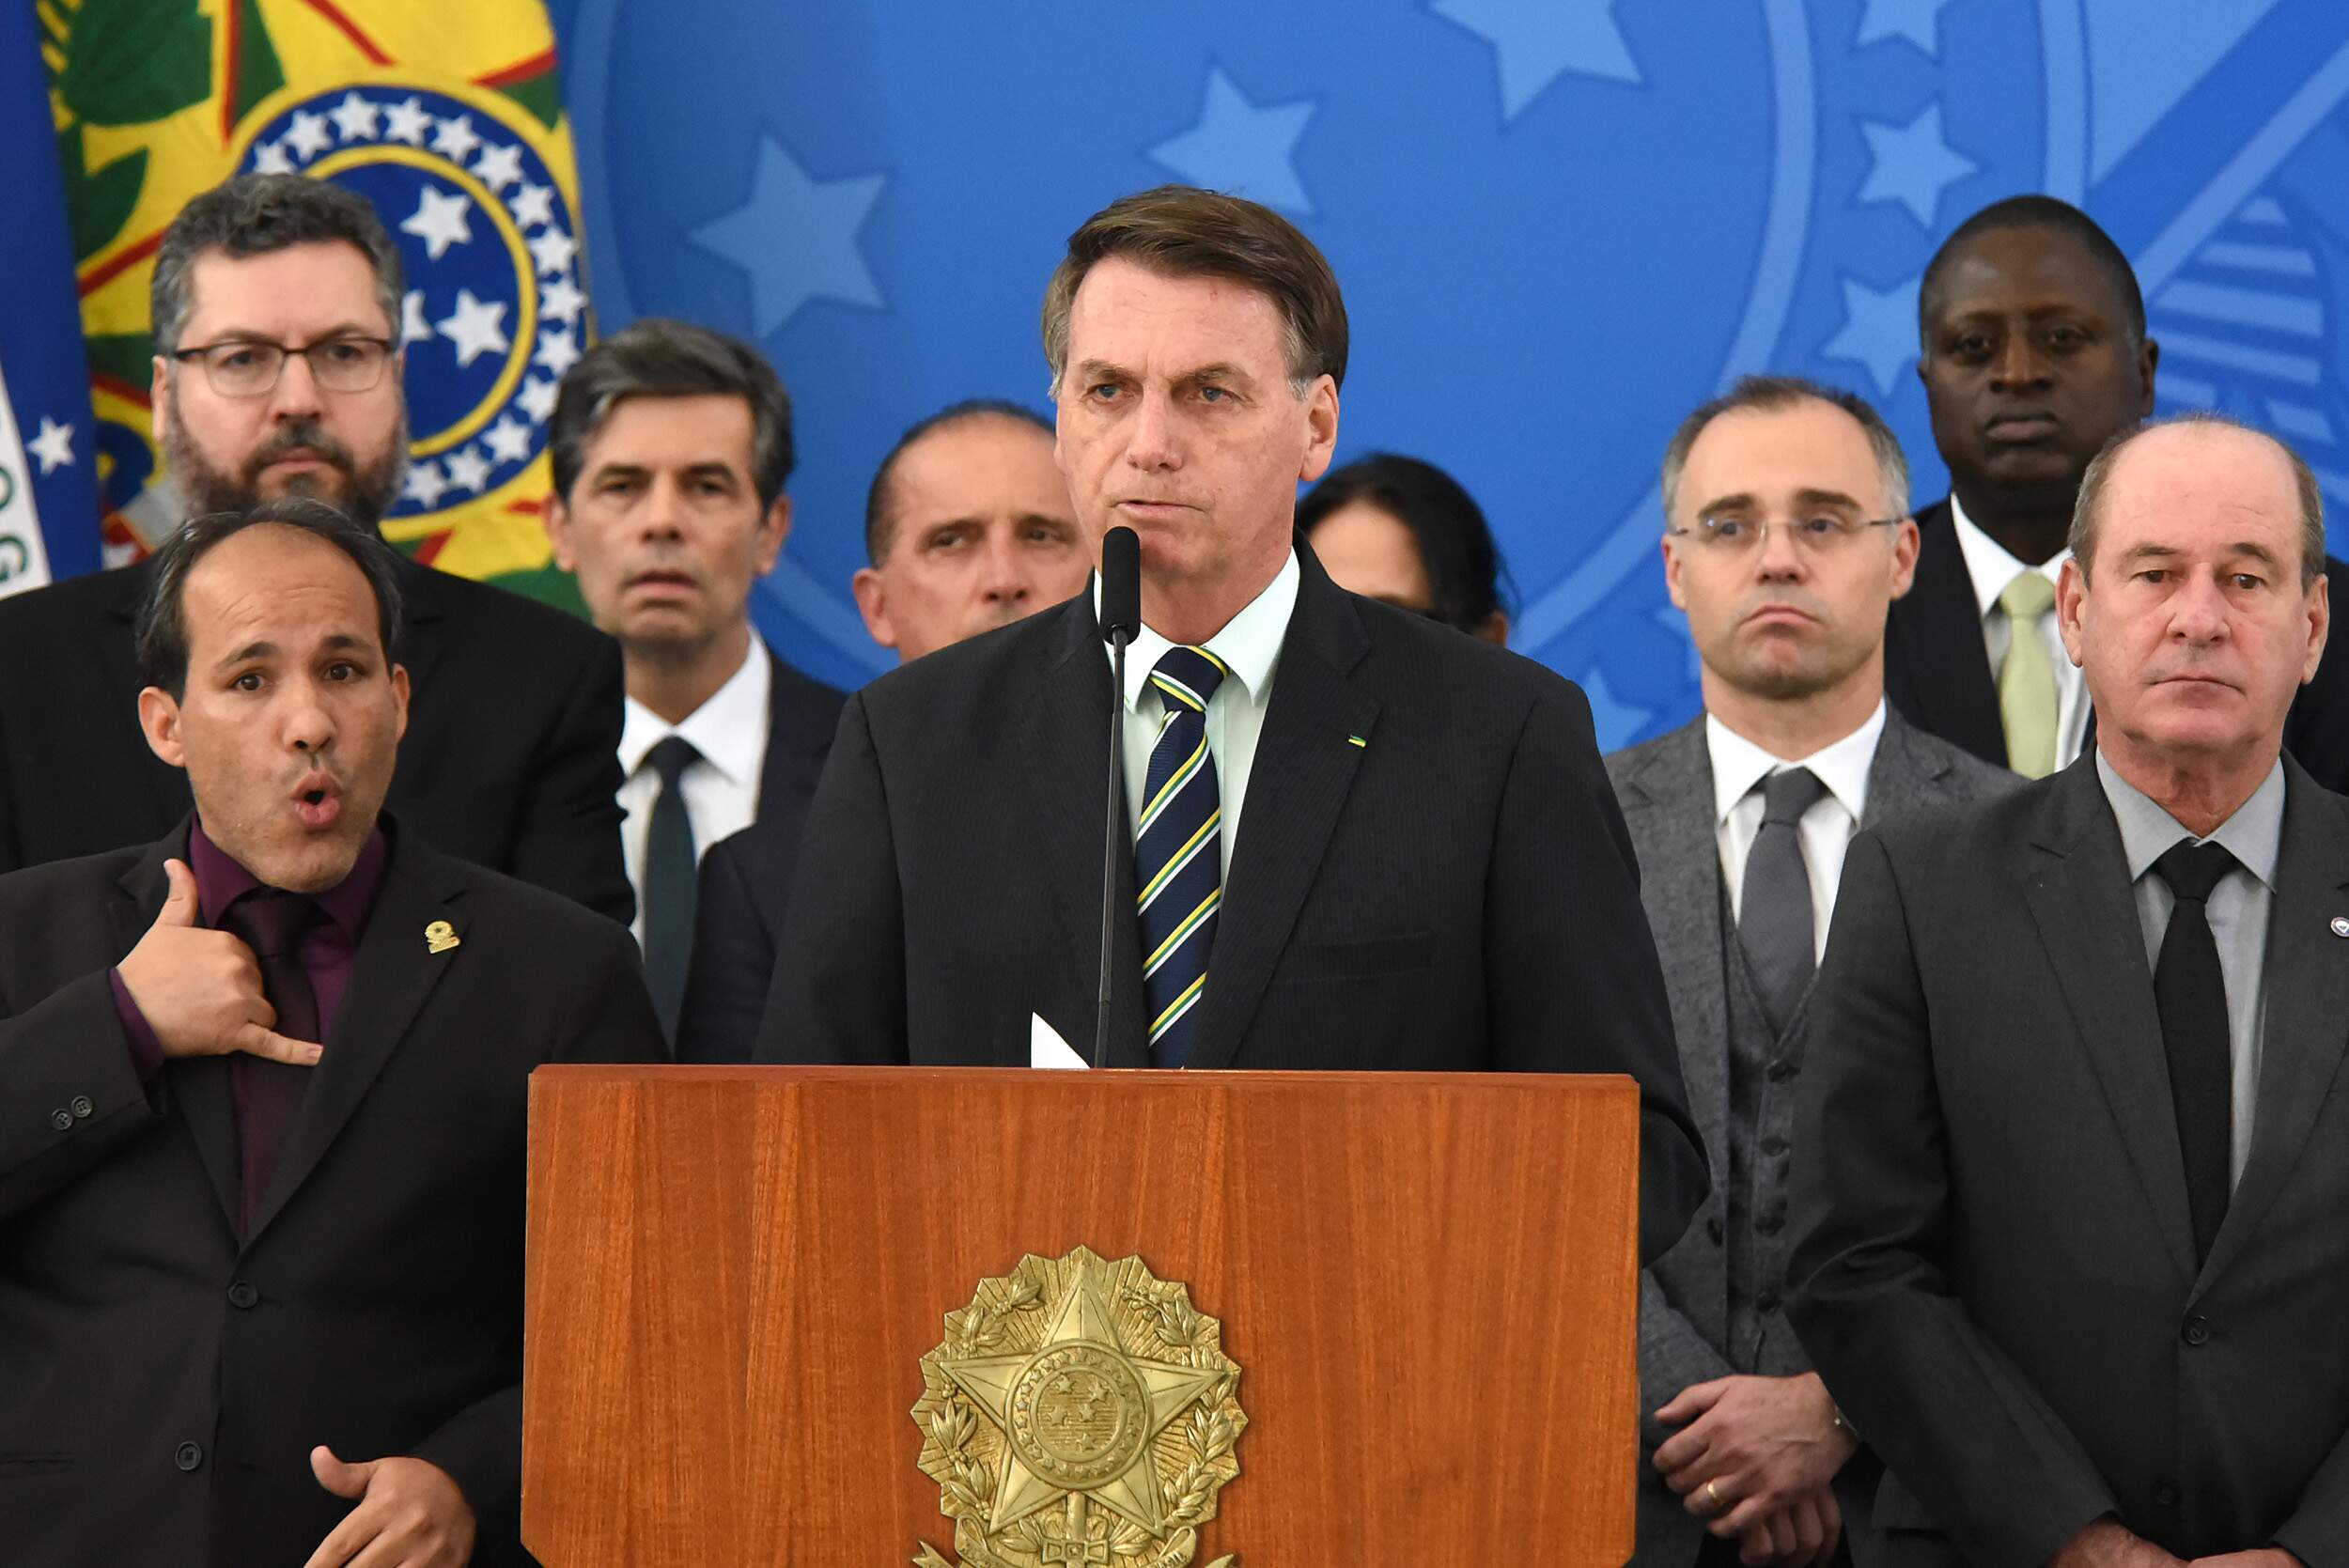 Acompanhado de seus ministros e aliados, presidente se pronunciou no Palácio do Planalto